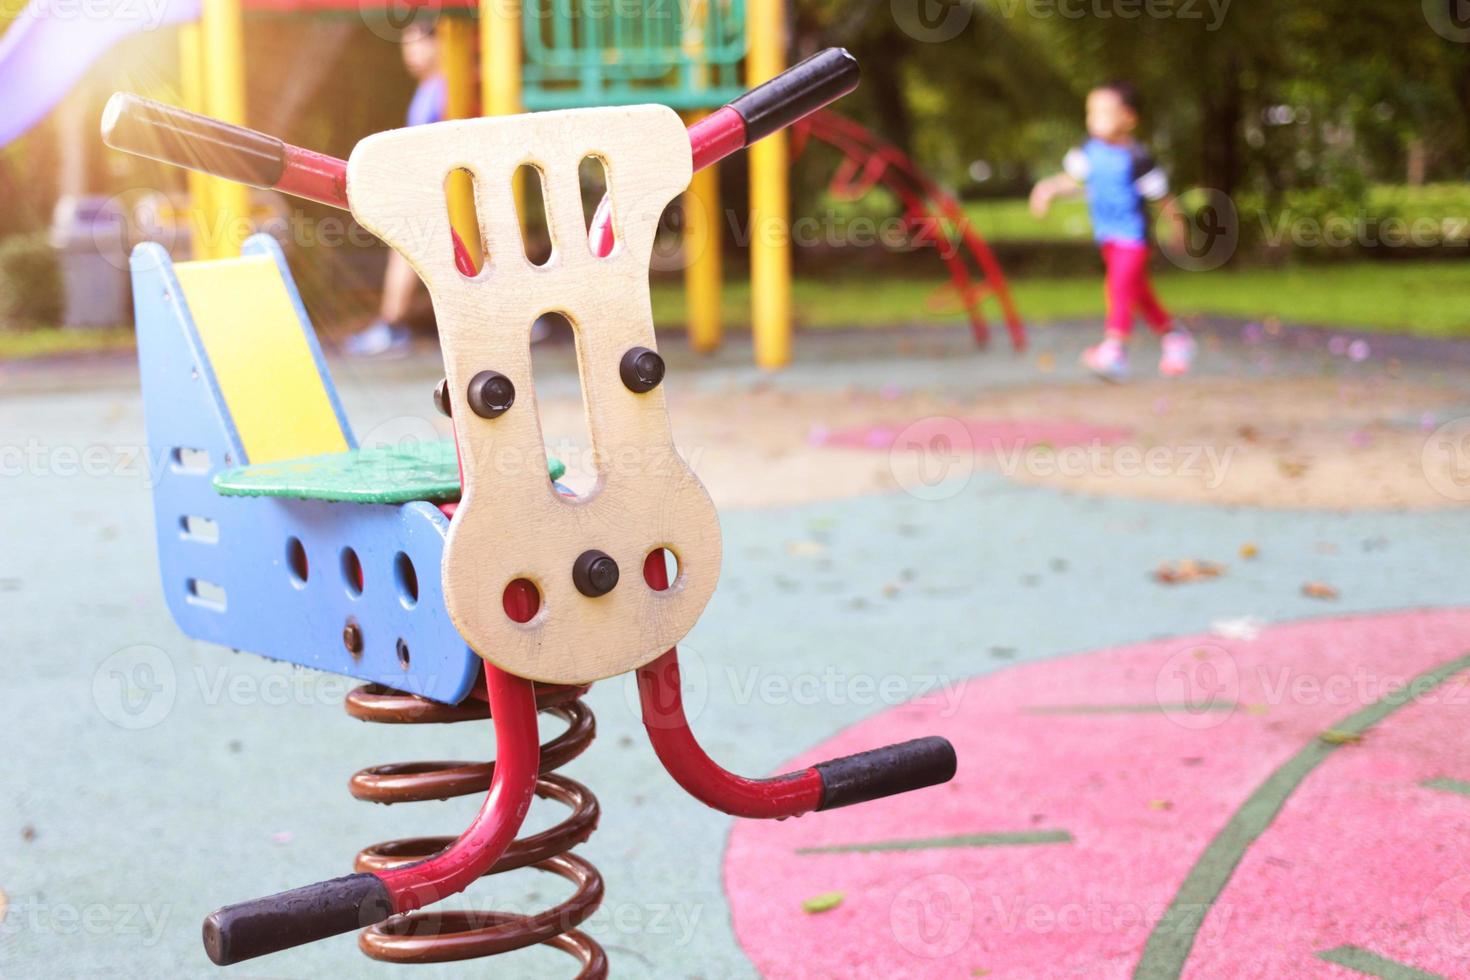 Zie zag speelgoed in openbare speeltuin in park op onscherpe speelplaatsachtergrond foto